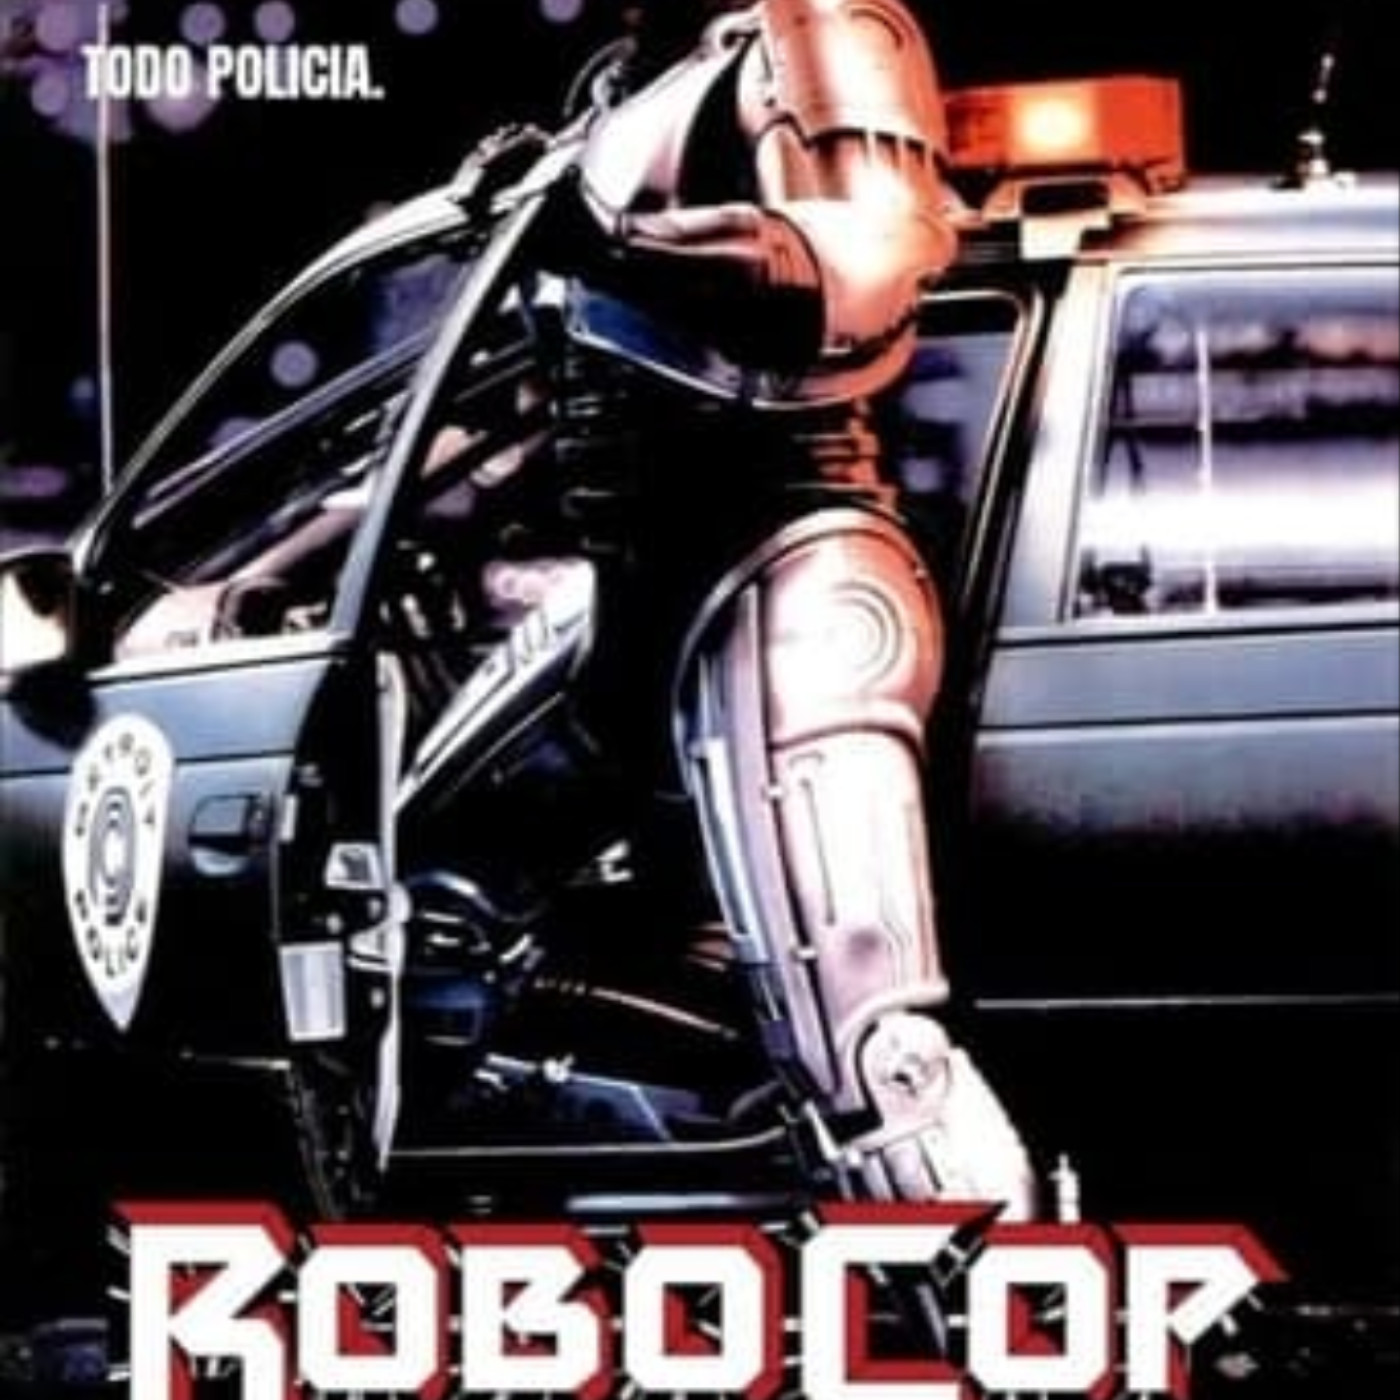 Ver RoboCop 1987 online gratis en español y latino | Podcast on SoundOn